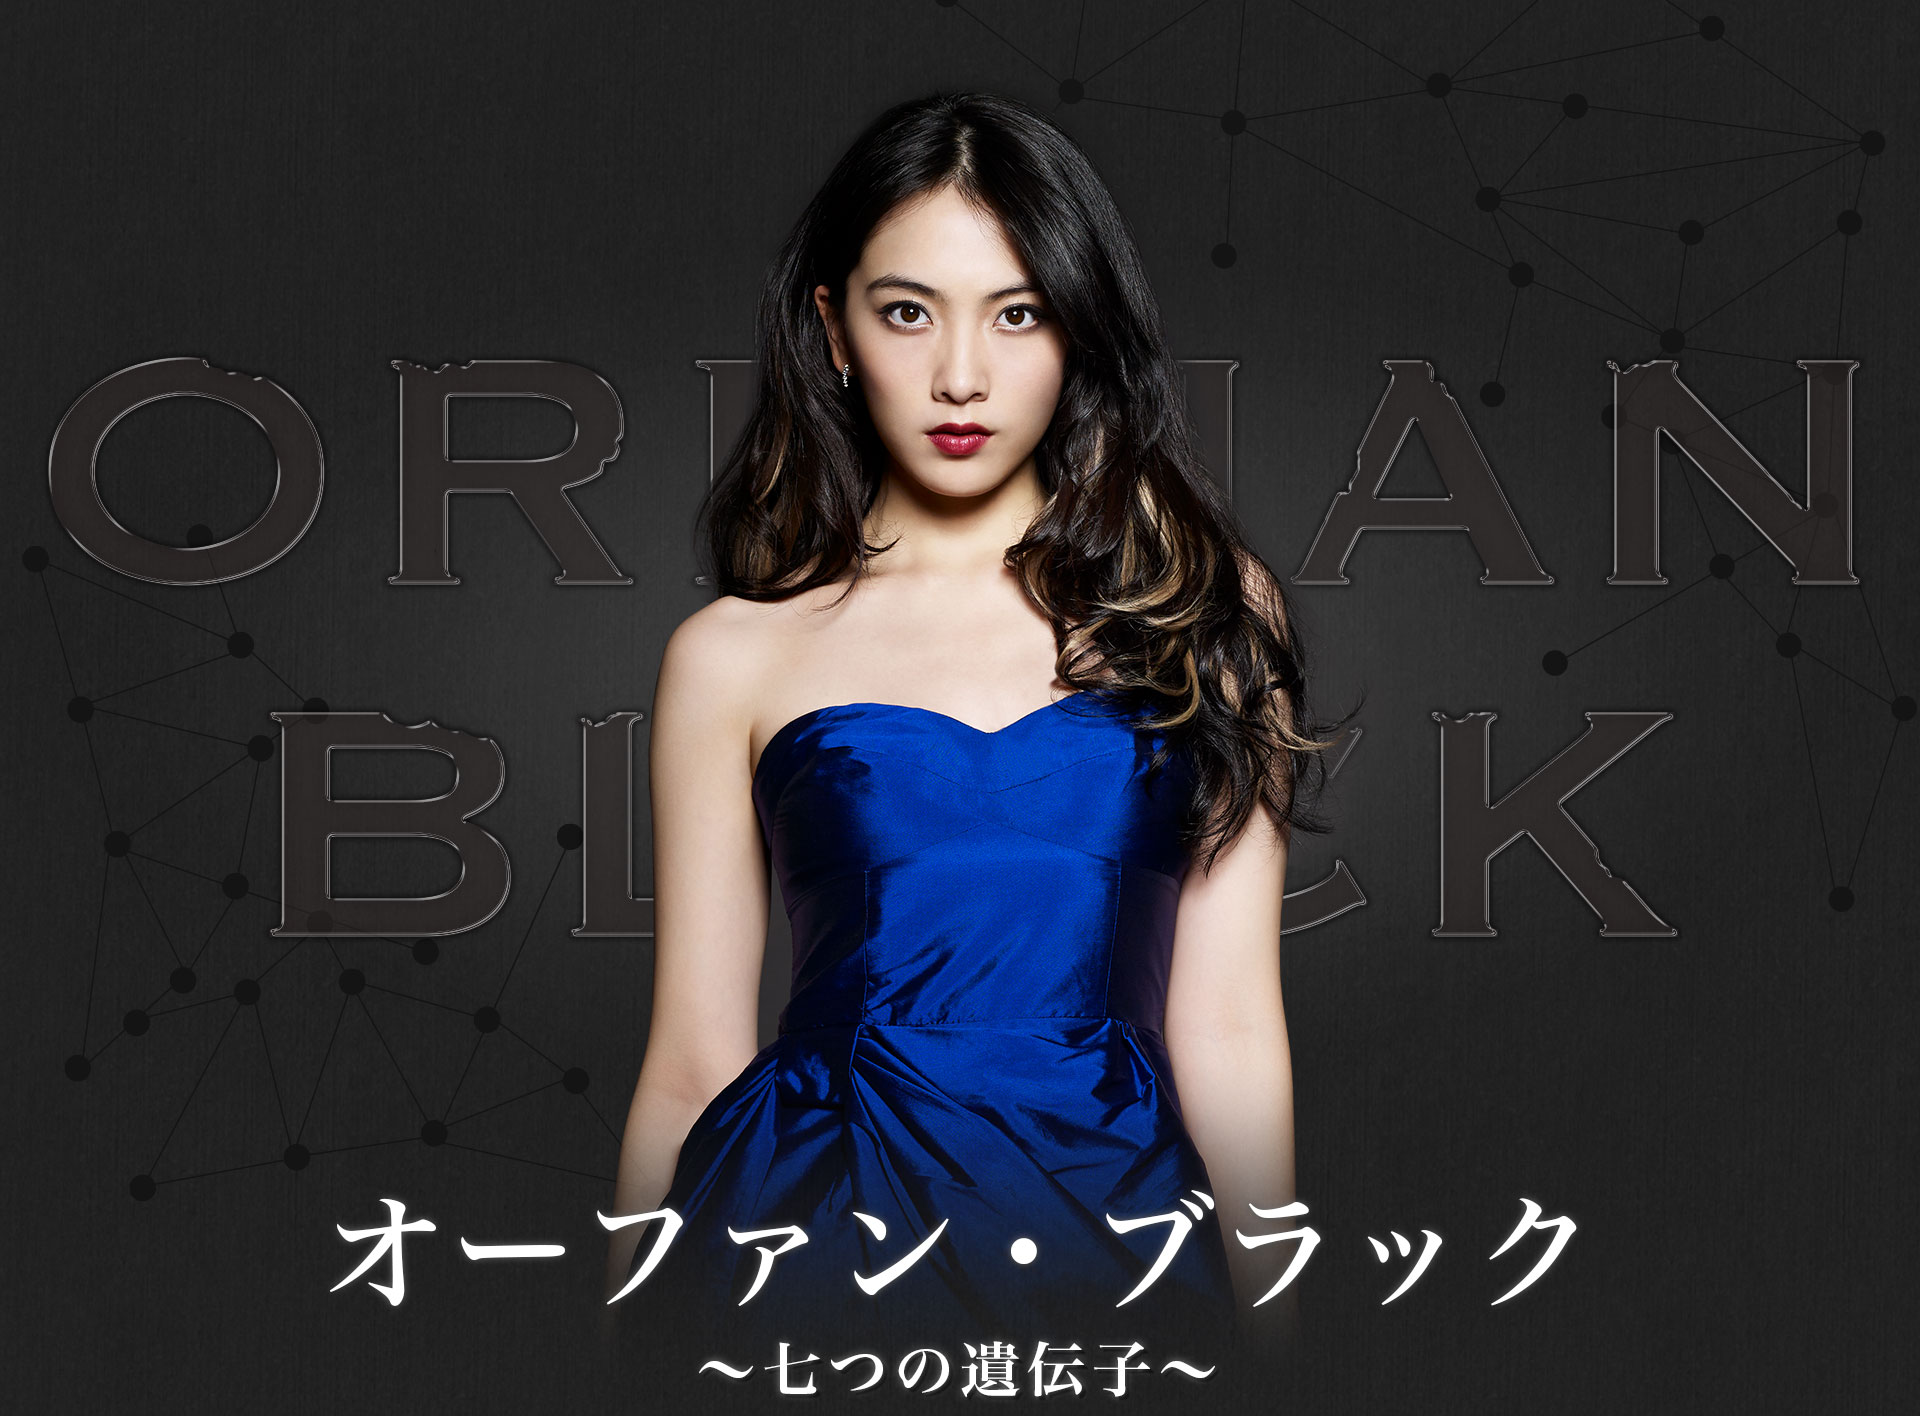 Orphan_Black_%28Japanese_Drama%29-TP.jpg